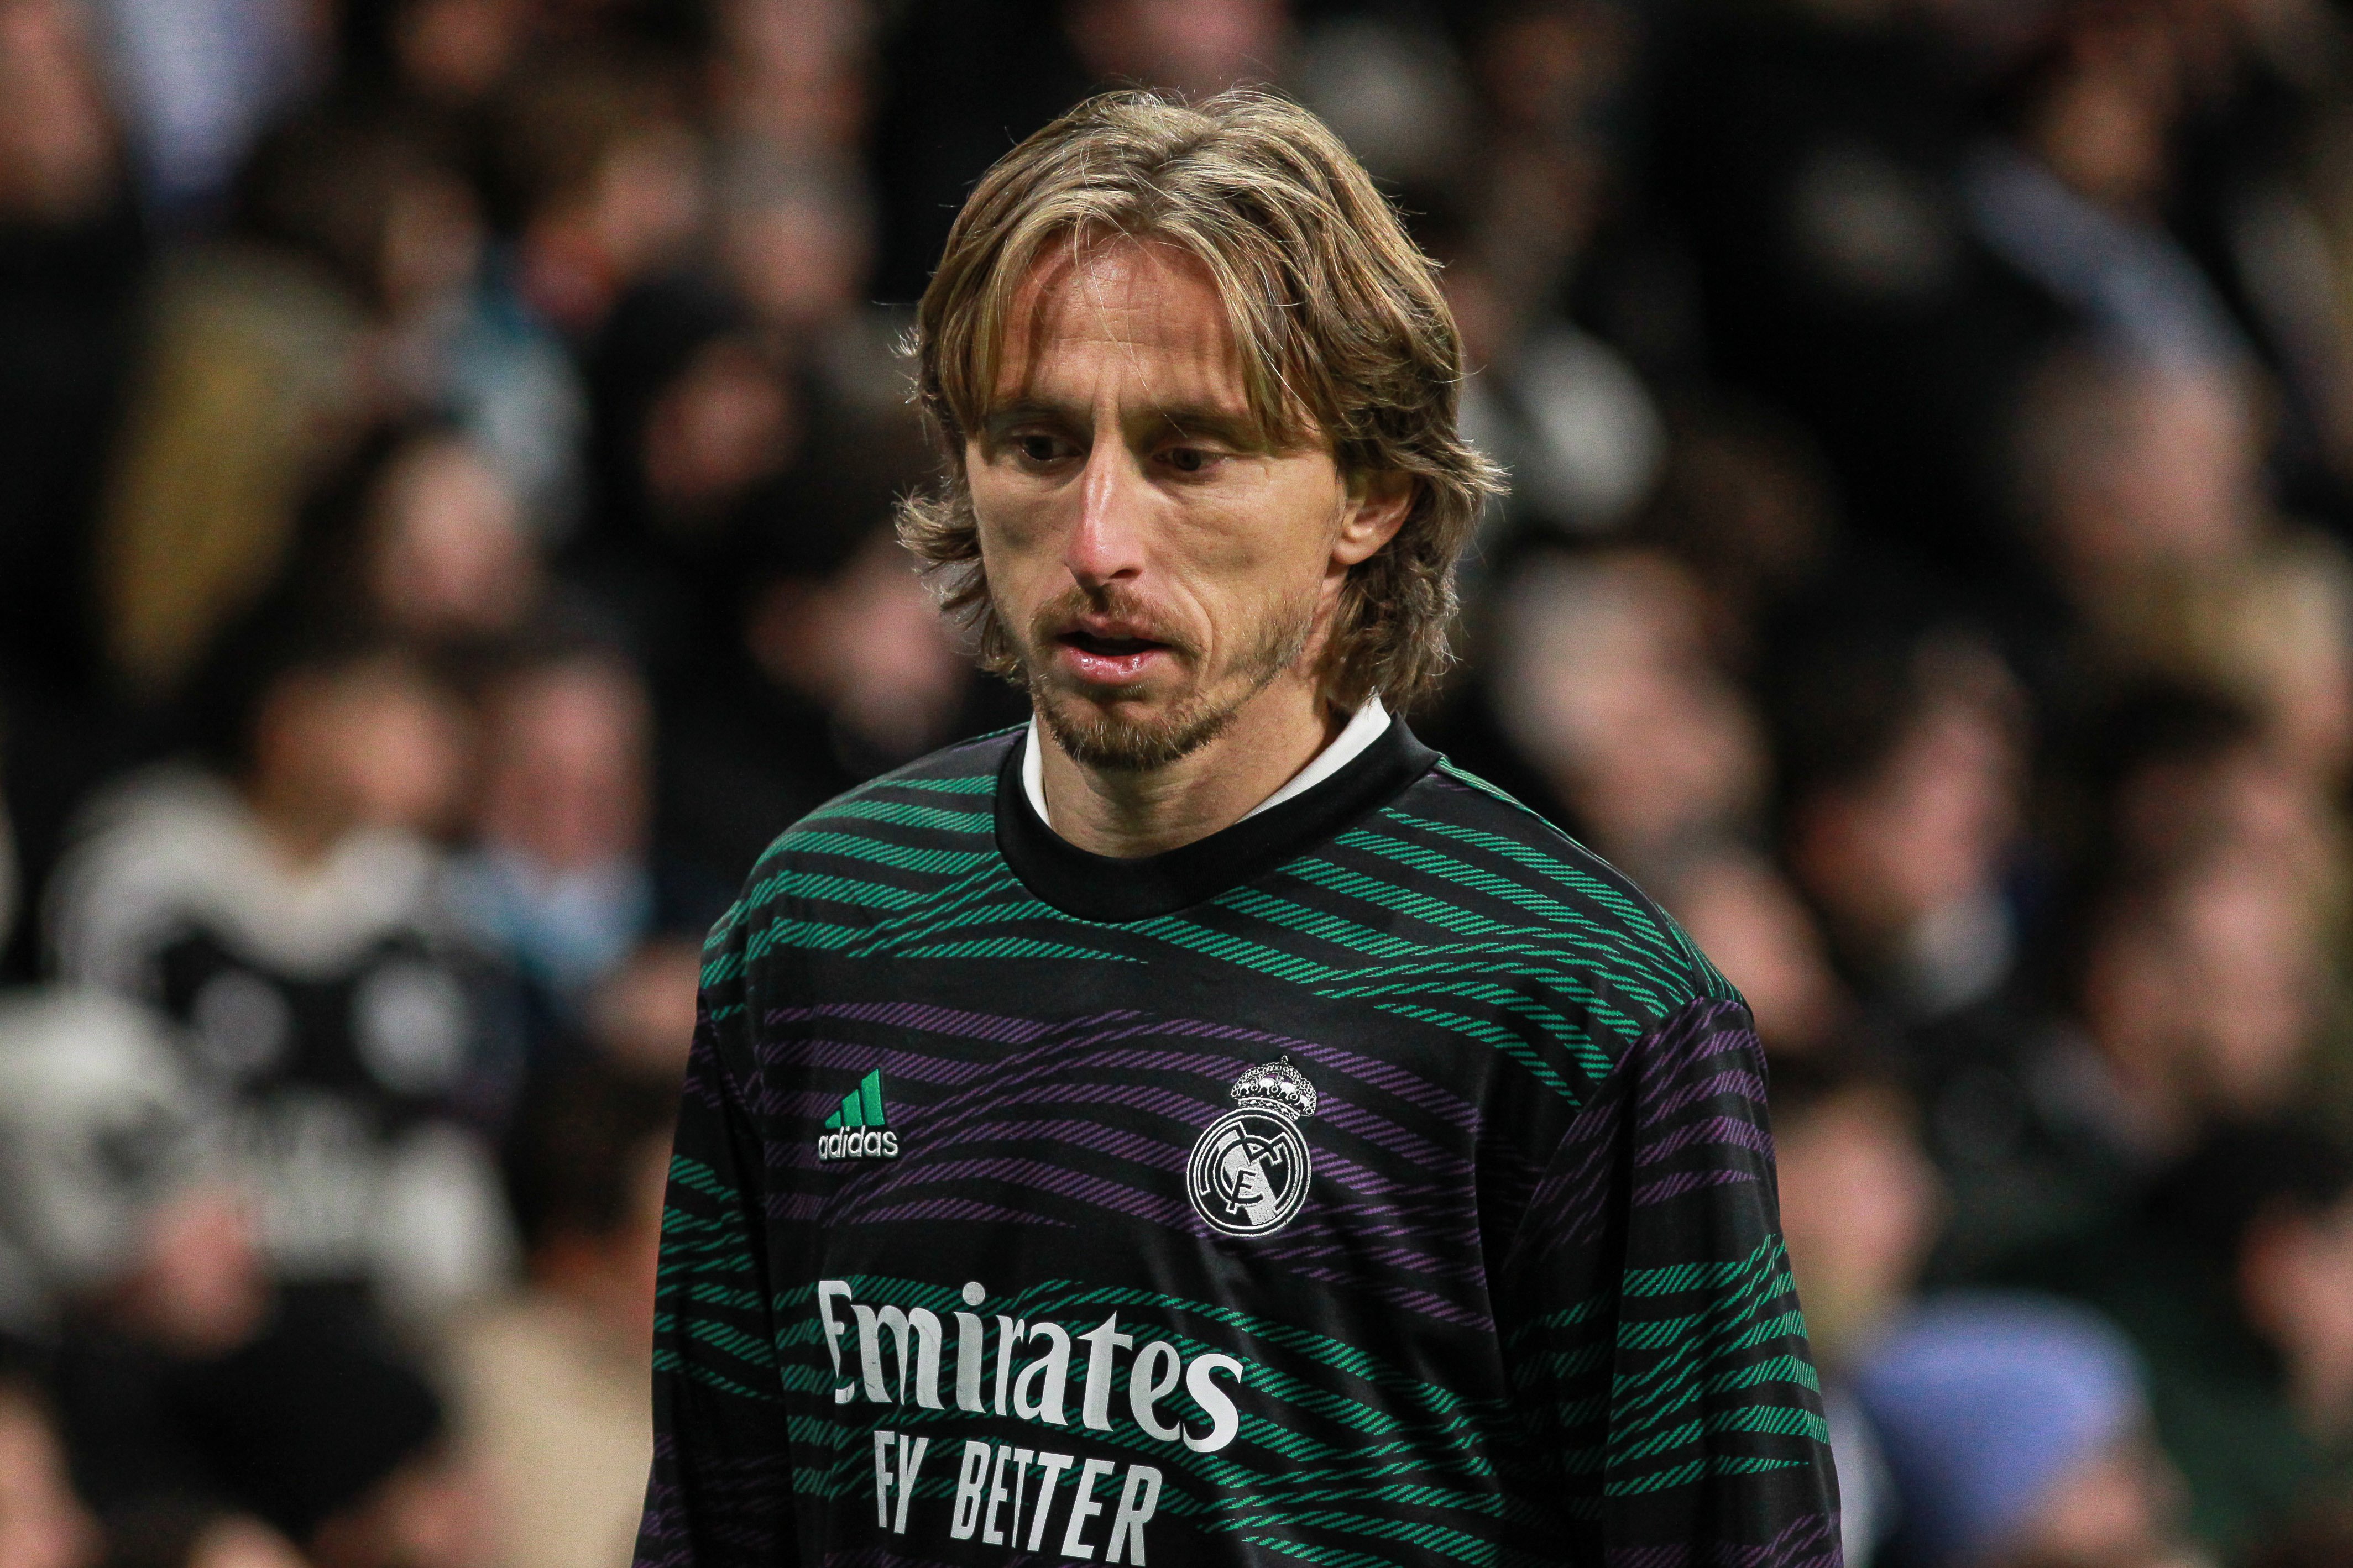 Parany a Modric per fer-lo fora del Reial Madrid en contra de la seva voluntat, 2 culpables